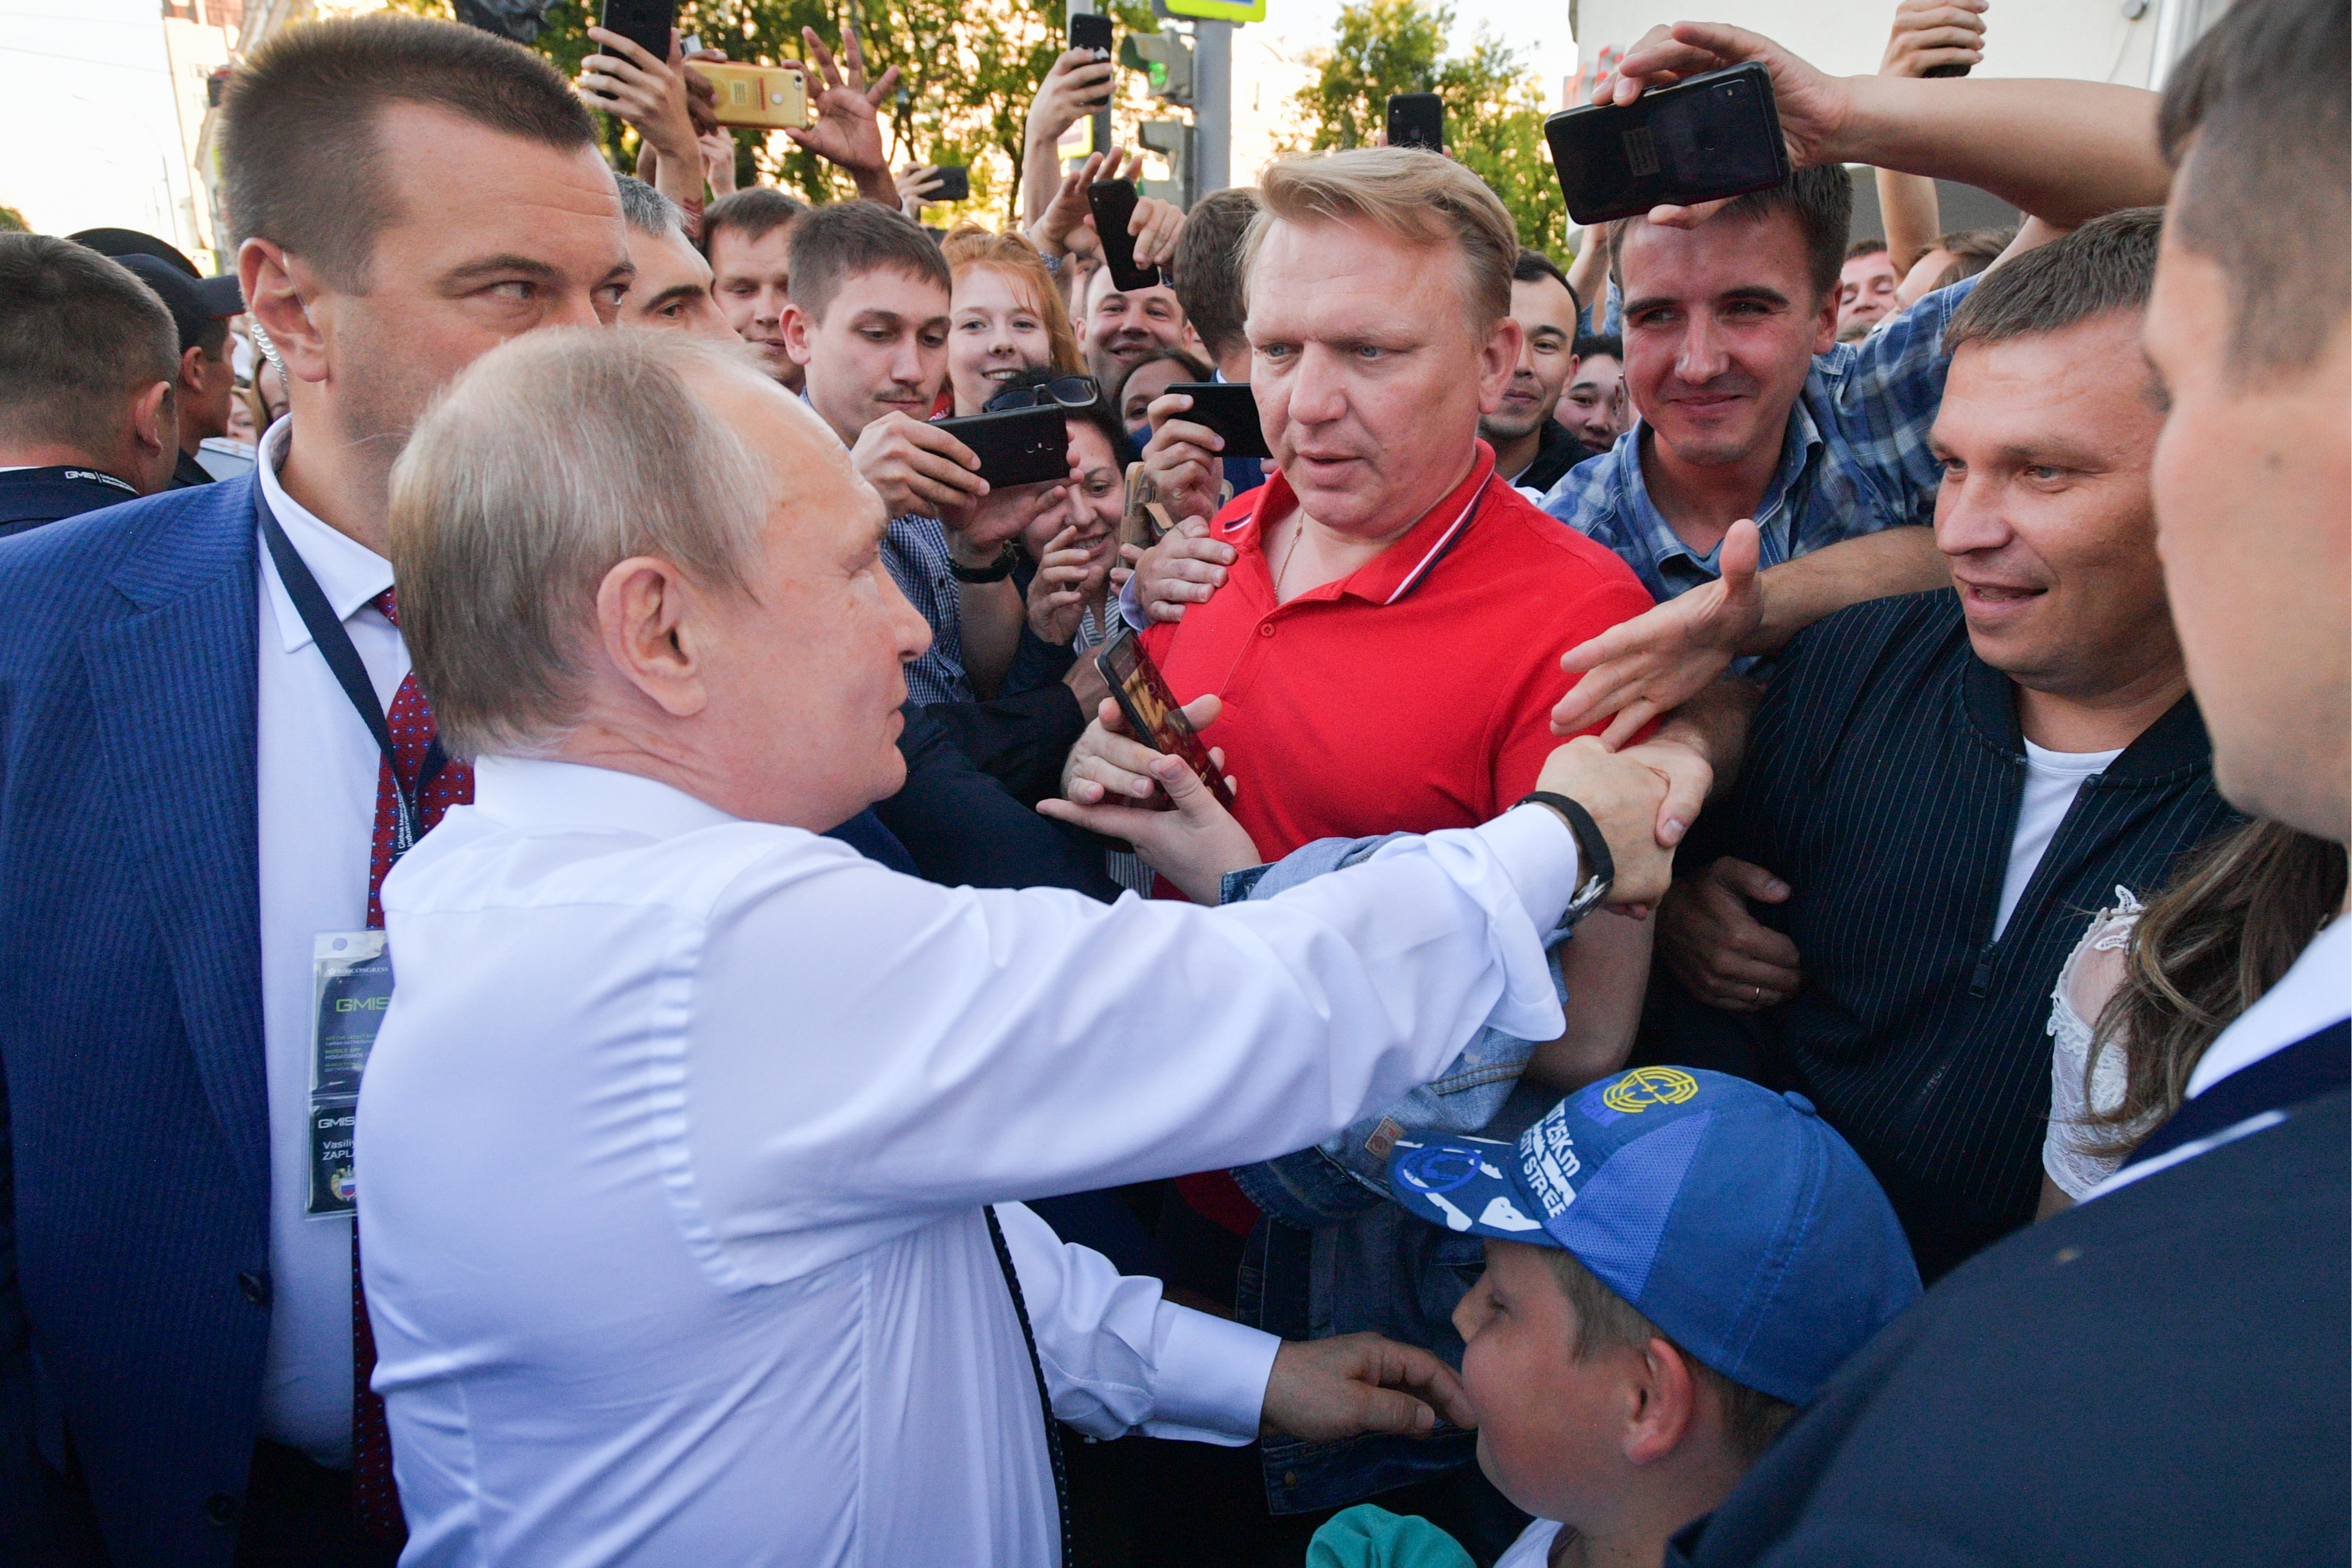 Новости россии е. Охрана Путина Екатеринбург. Фотографии Путина с народом.